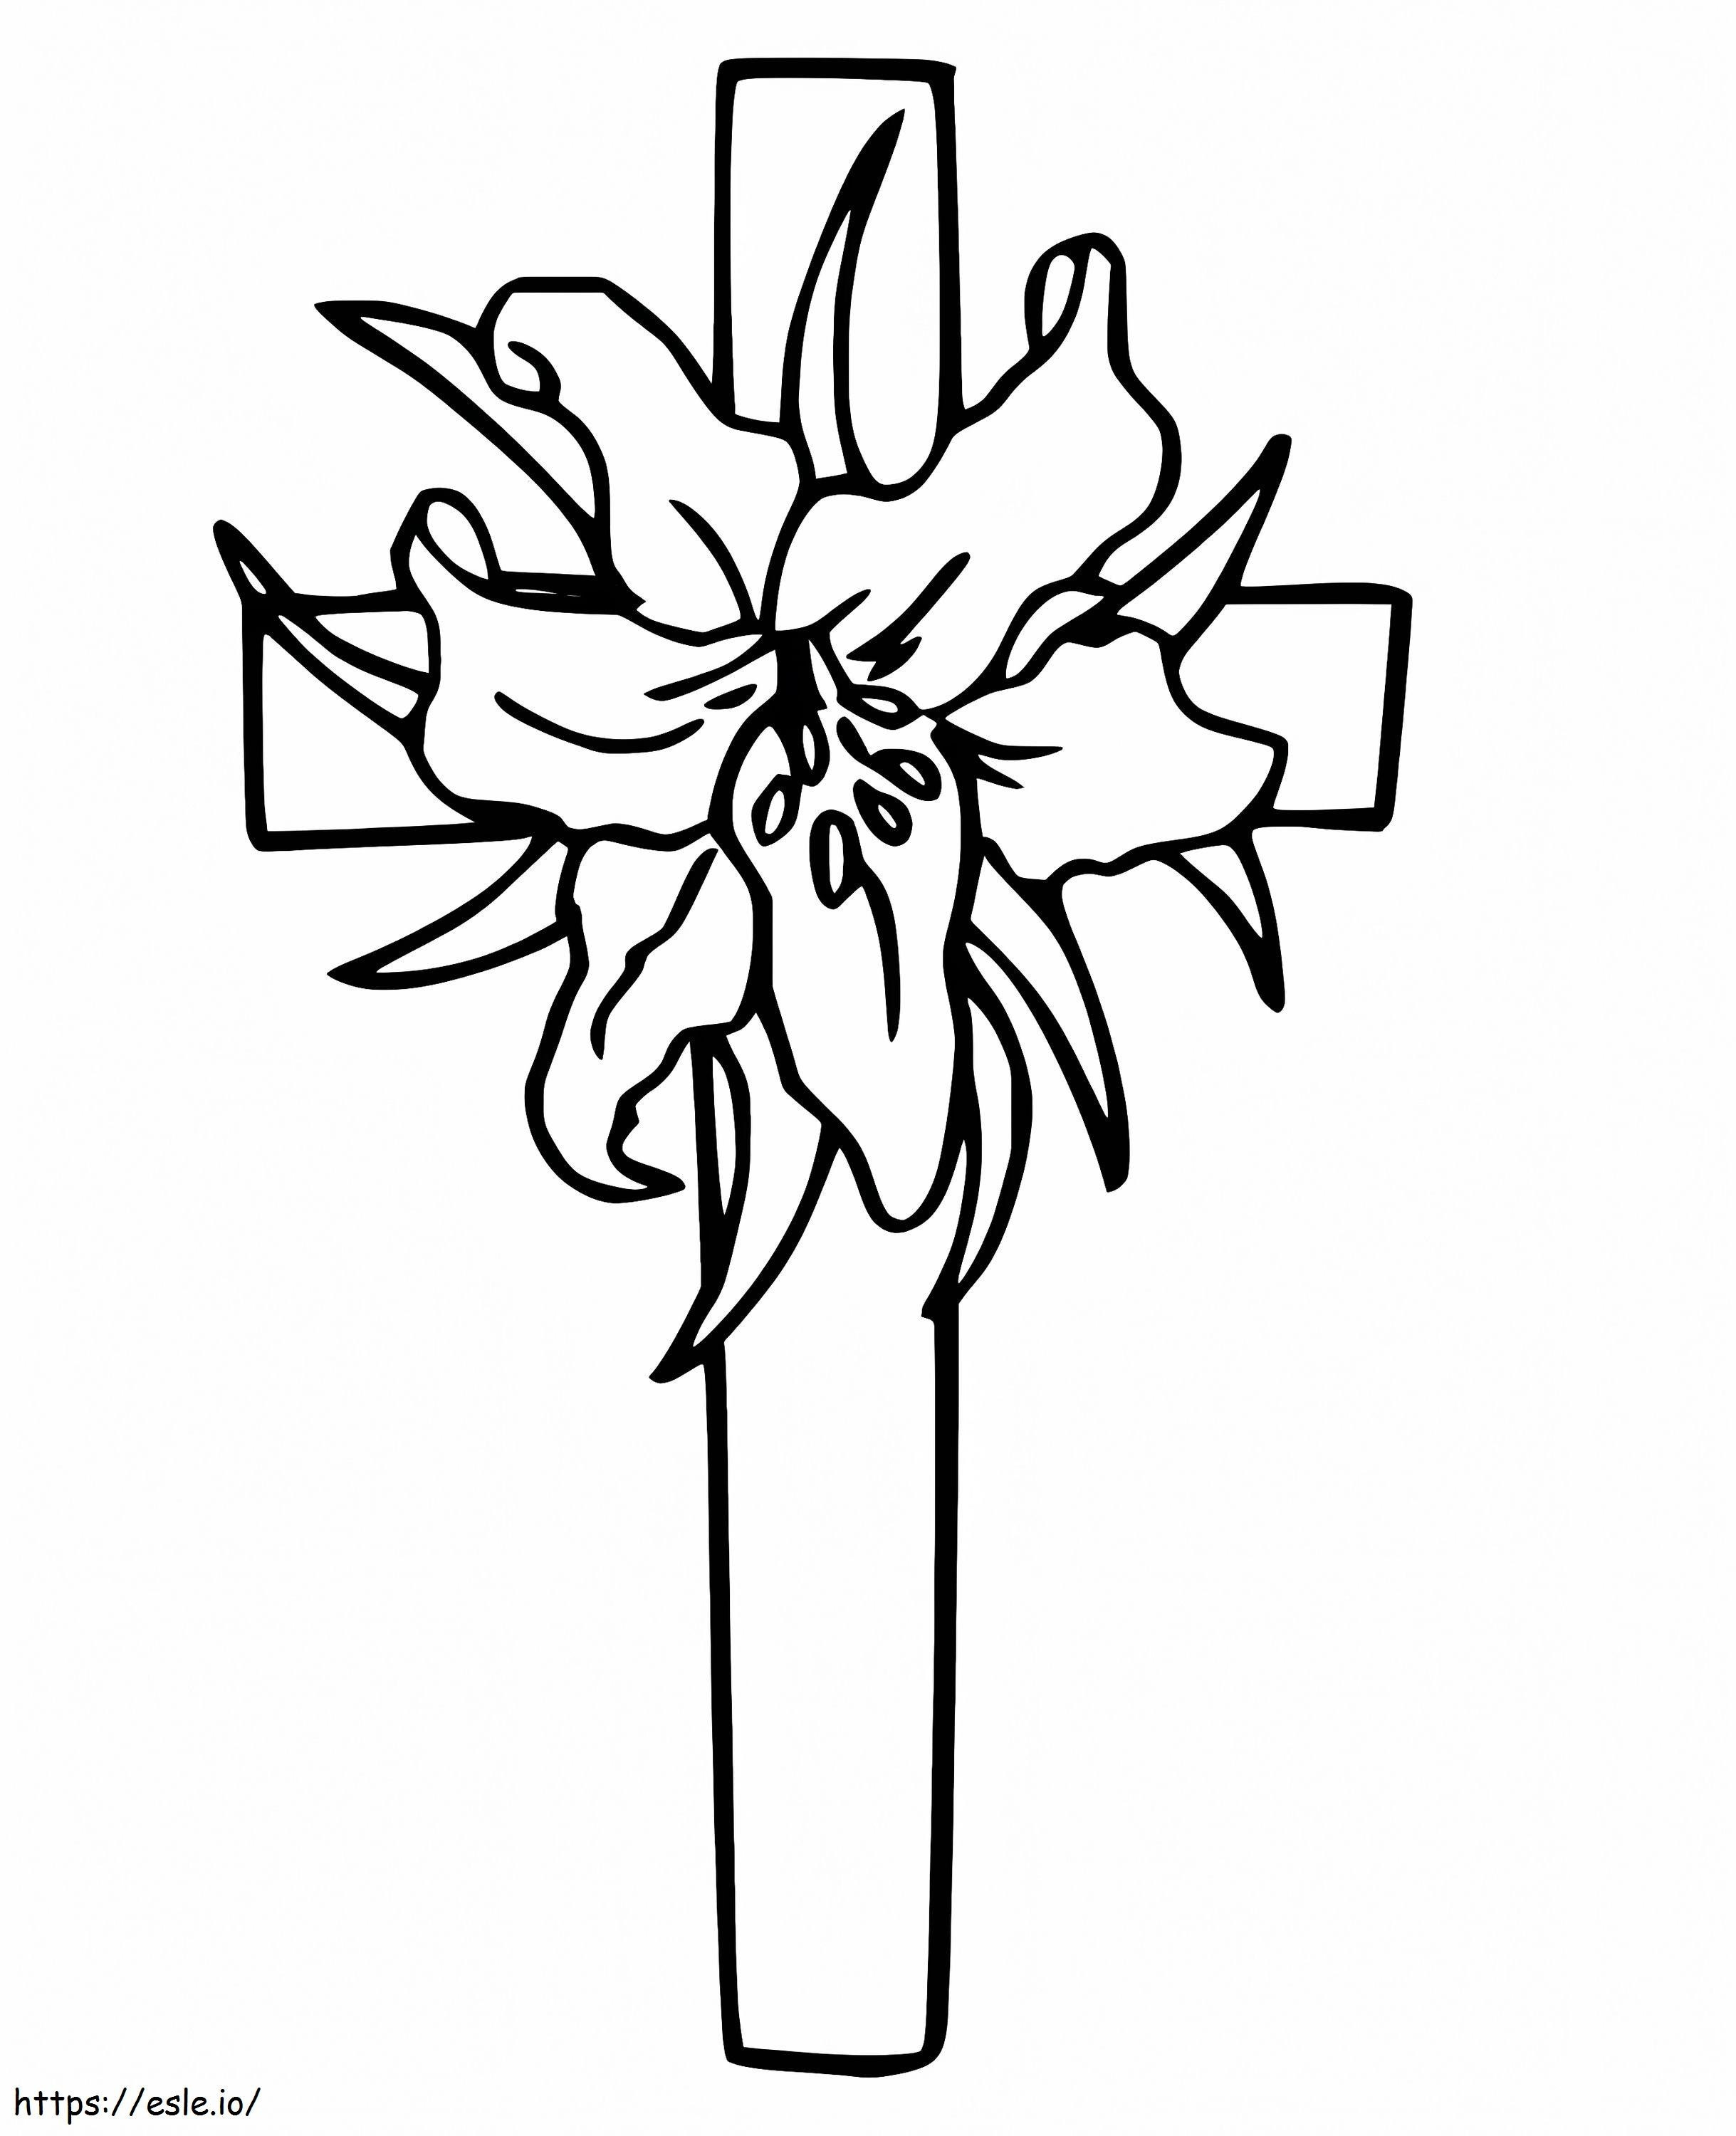 Cruz de Pascua Imprimible para colorear